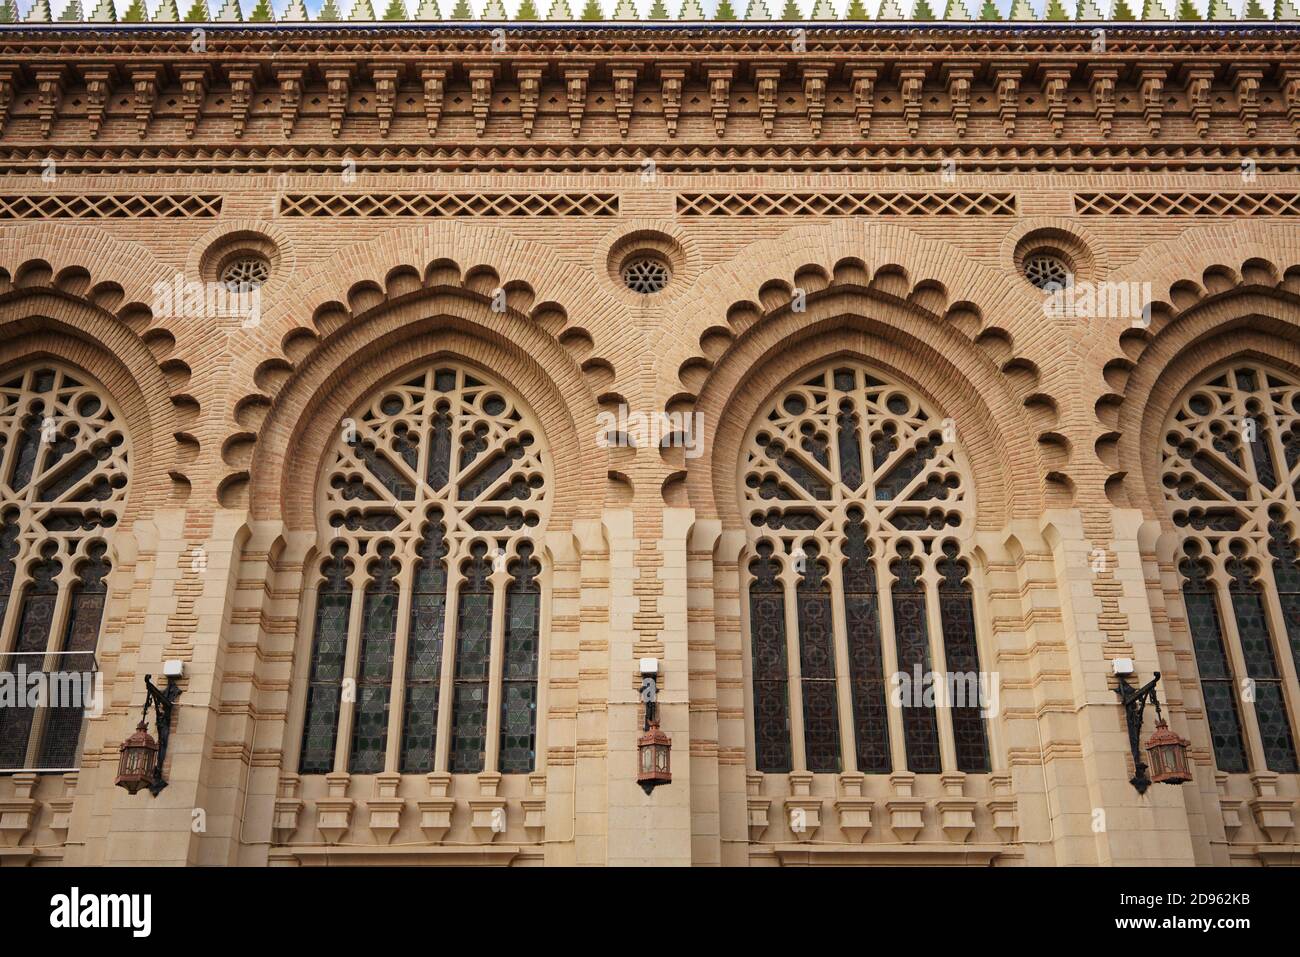 Dettaglio della stazione ferroviaria di Toledo, Spagna. Neo-Mudéjar, architettura moresca revival. Foto Stock